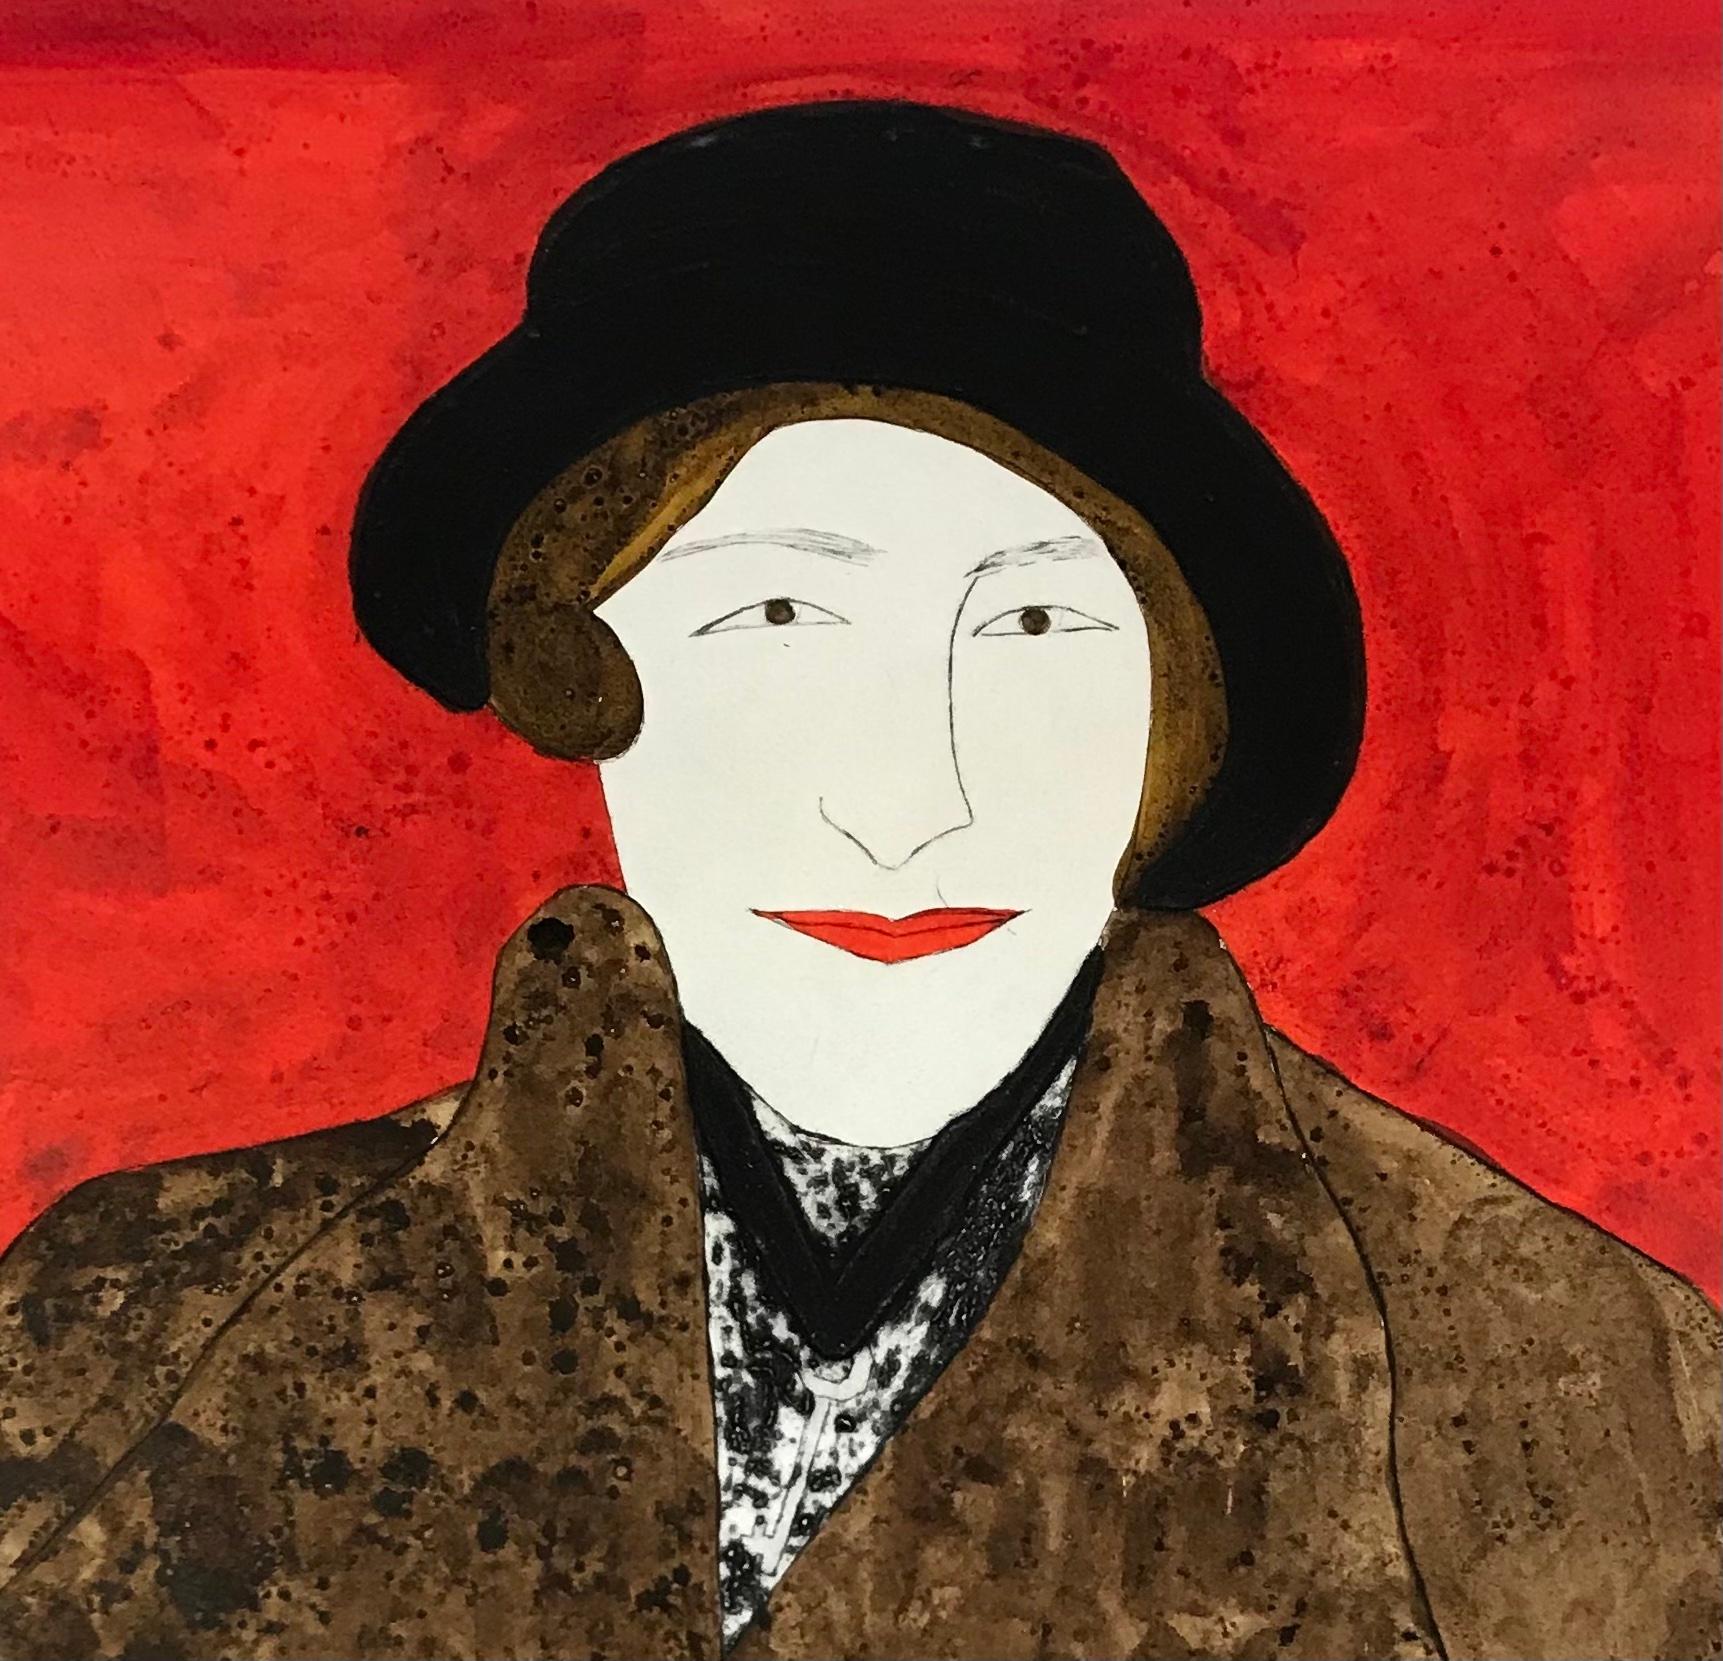 Agatha Christie's ist eine handkolorierte Kaltnadelradierung in limitierter Auflage von Kate Boxer. Es zeigt den ikonischen Schriftsteller mit einem schwarzen Hut und einem braunen Pelzmantel vor einem roten Hintergrund.

Dame Agatha Christie war